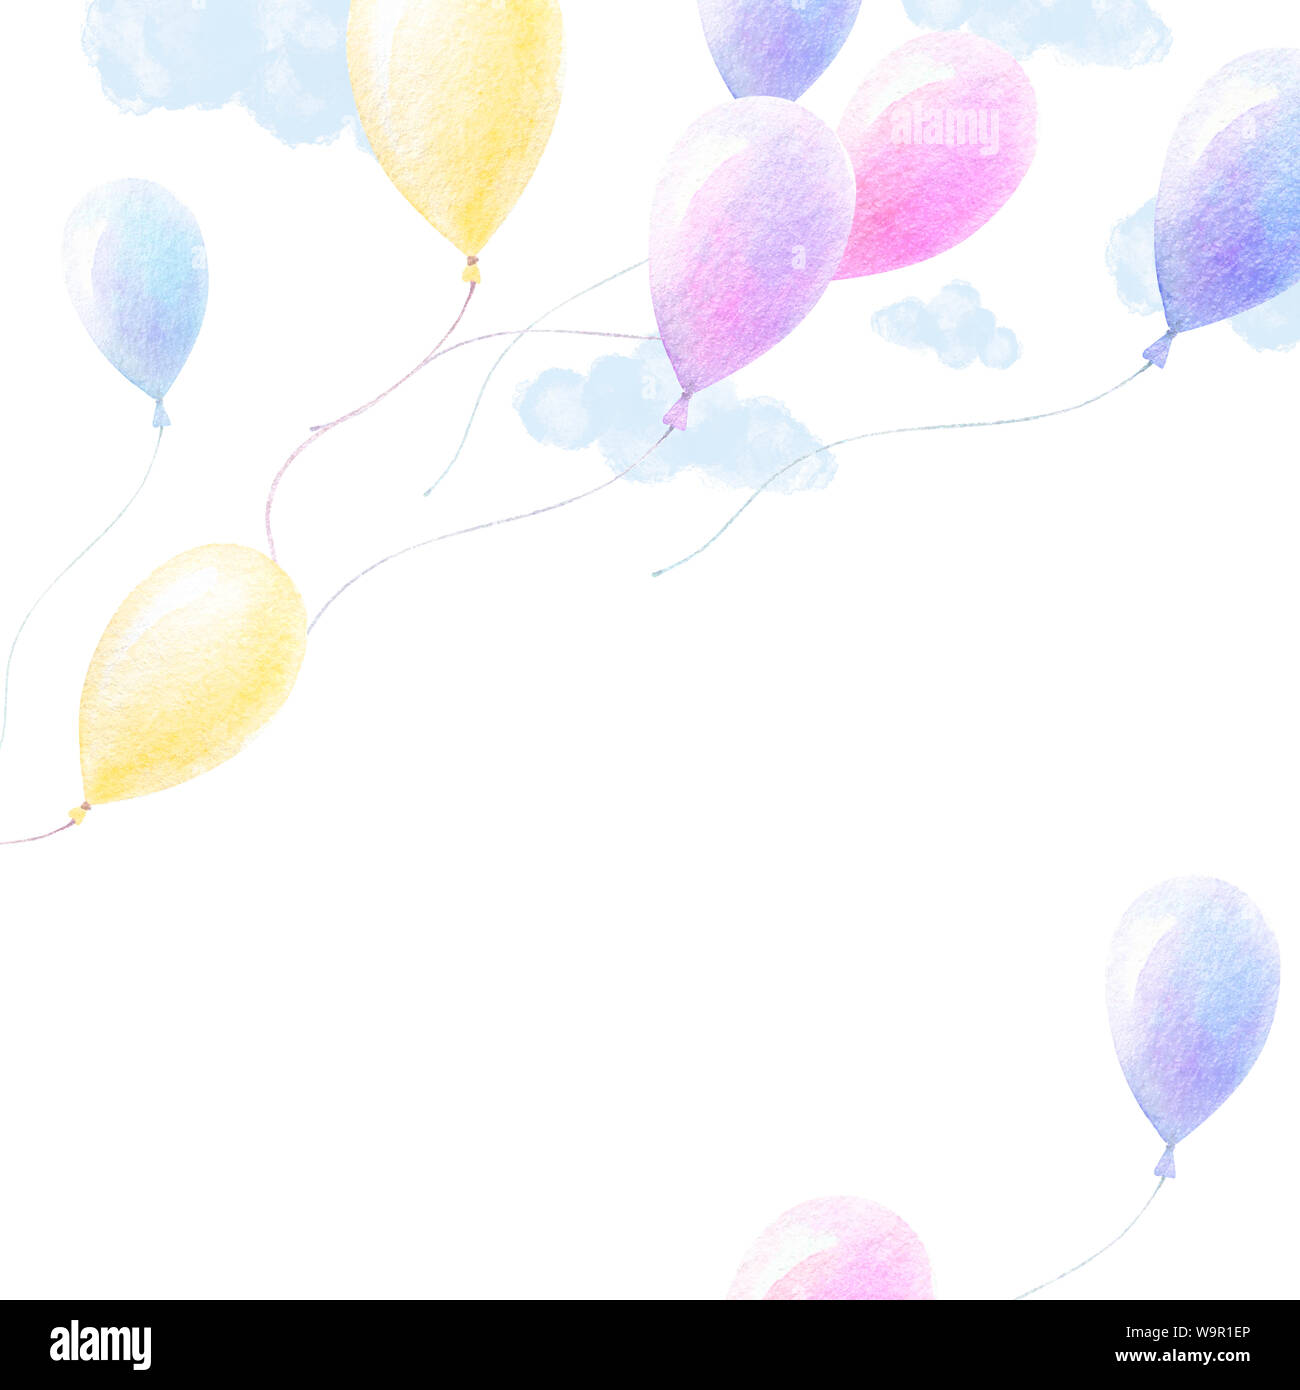 Carino acquerello. Colorato ballons volare nel cielo azzurro nuvole, sfondo bianco. Baby Doccia art. Sfondo di poster. La qualità di stampa. Acquerello kids Foto Stock